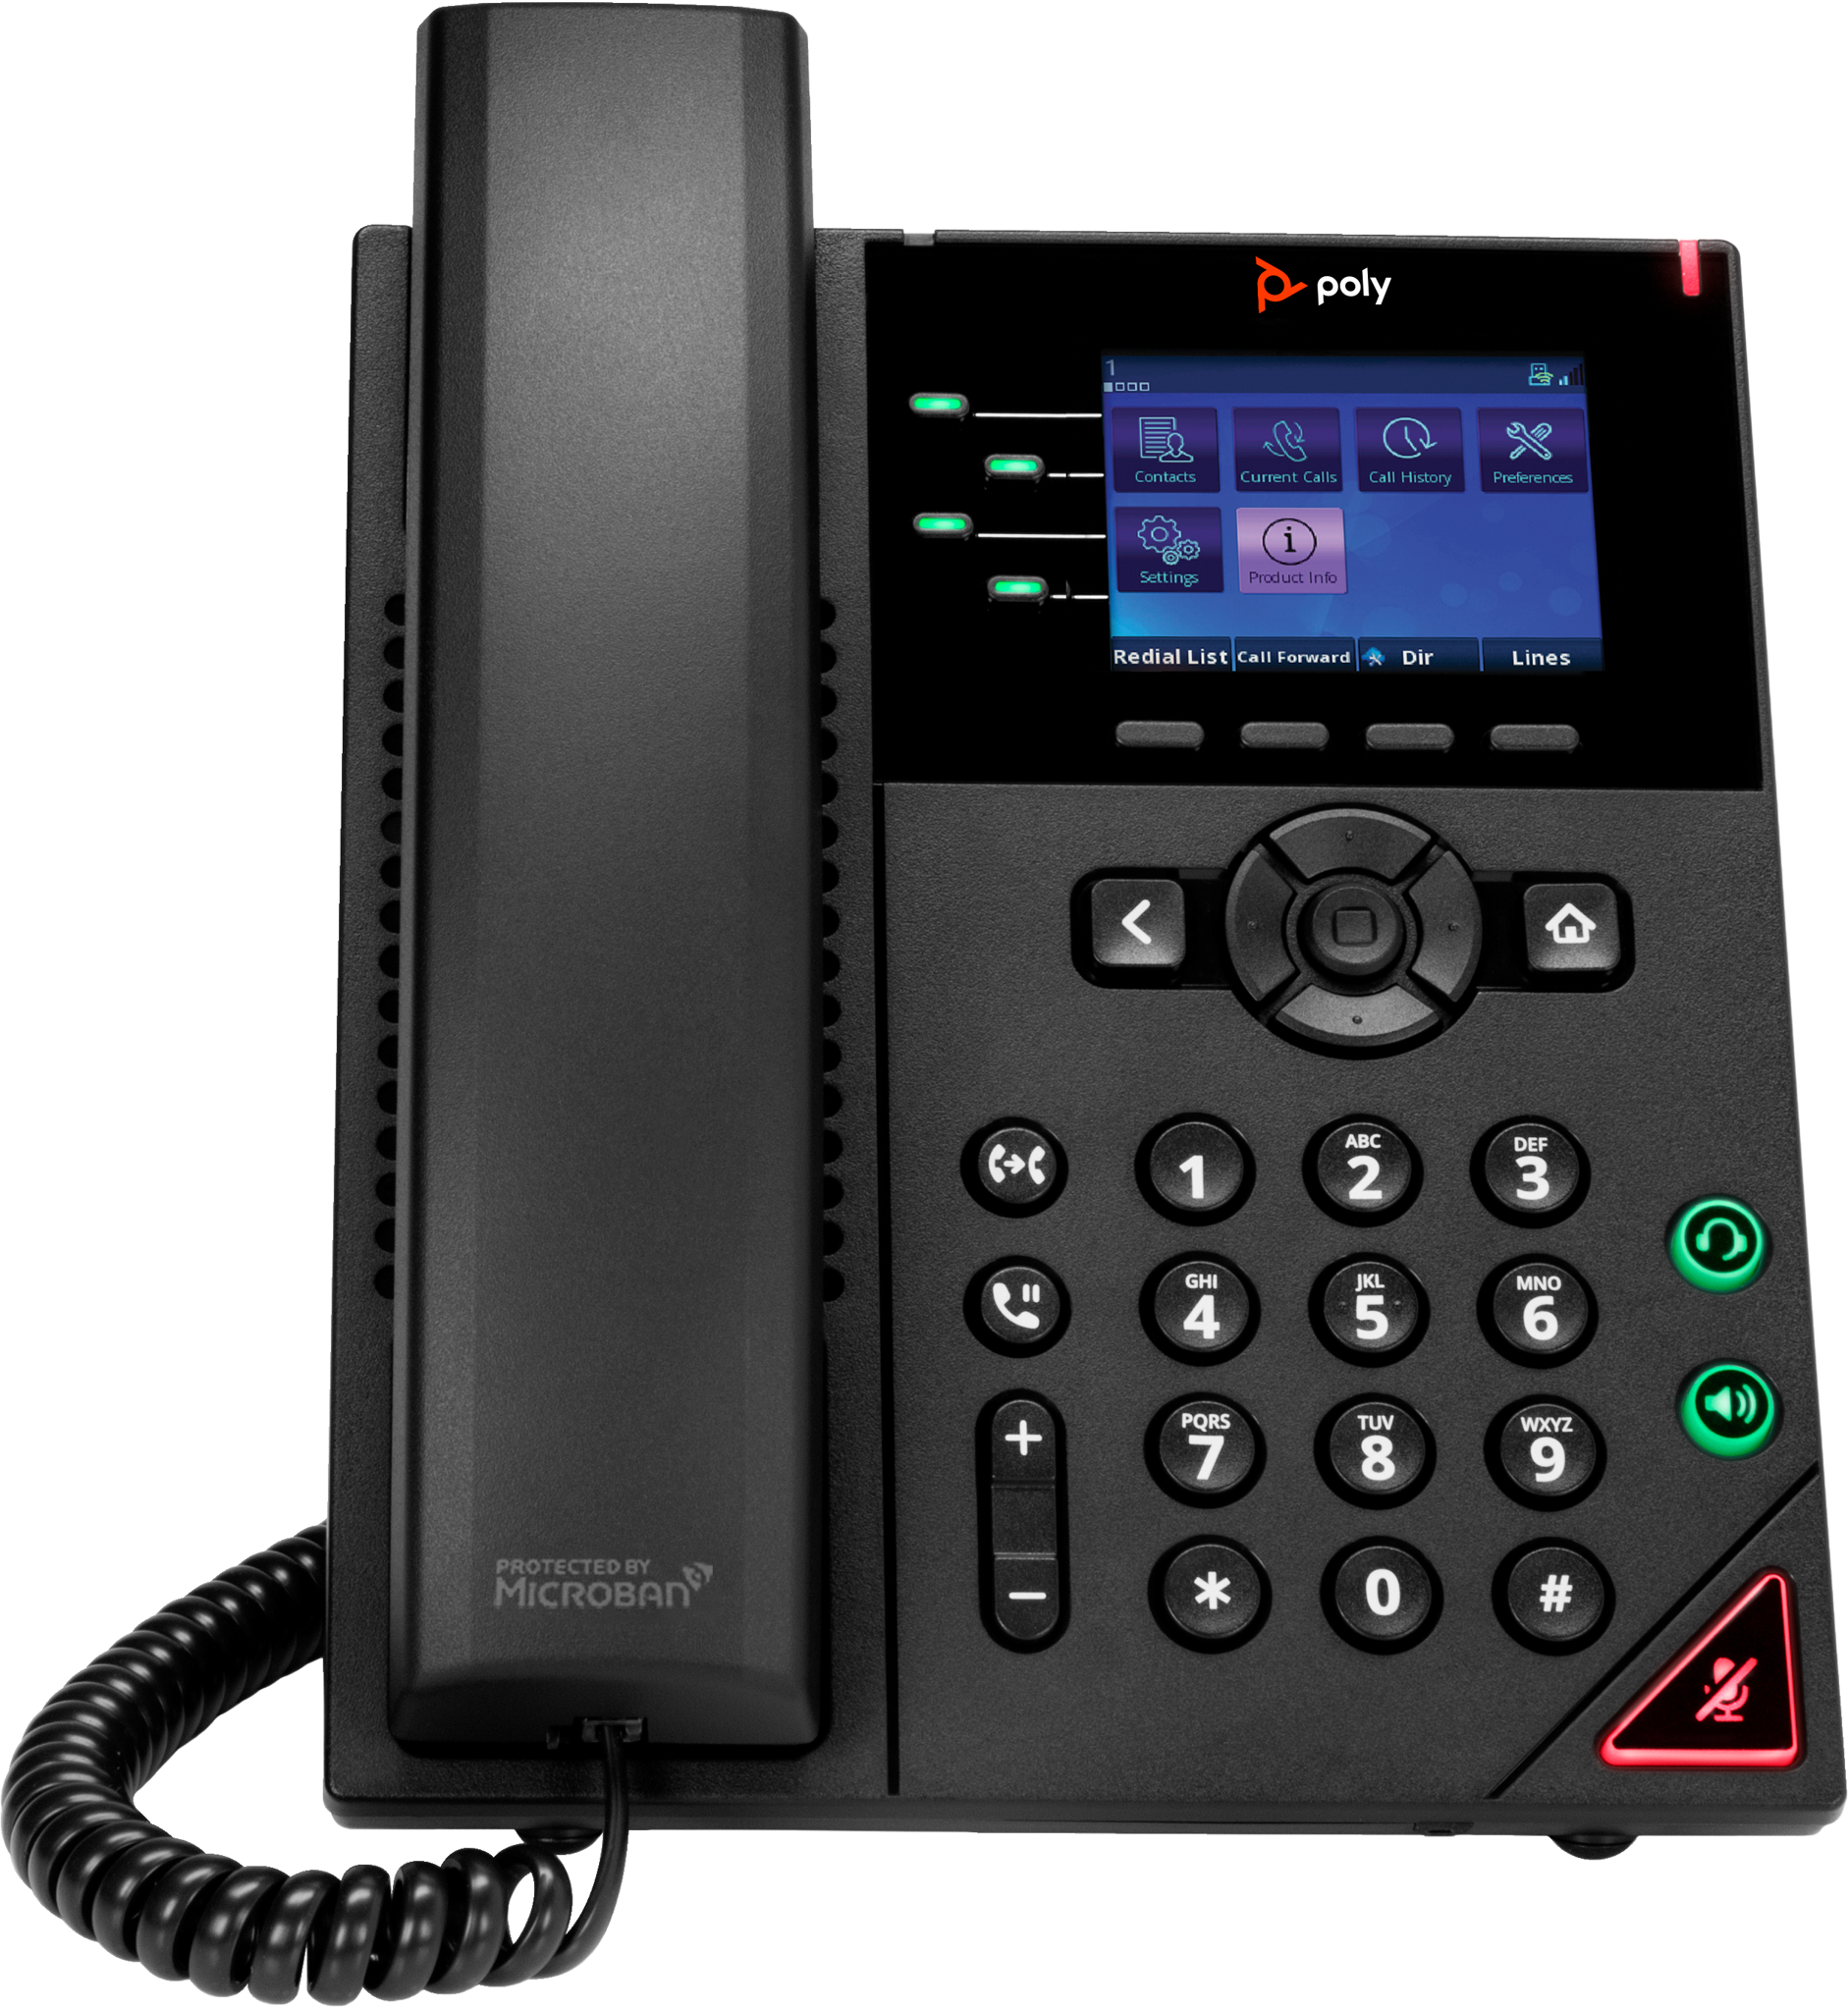 Bild von HP POLY OBi VVX 250 IP Telefon mit 4 Leitungen und PoE-fähig, IP-Telefon, Schwarz, Kabelgebundenes Mobilteil, 4 Zeilen, LED, 7,11 cm (2.8")